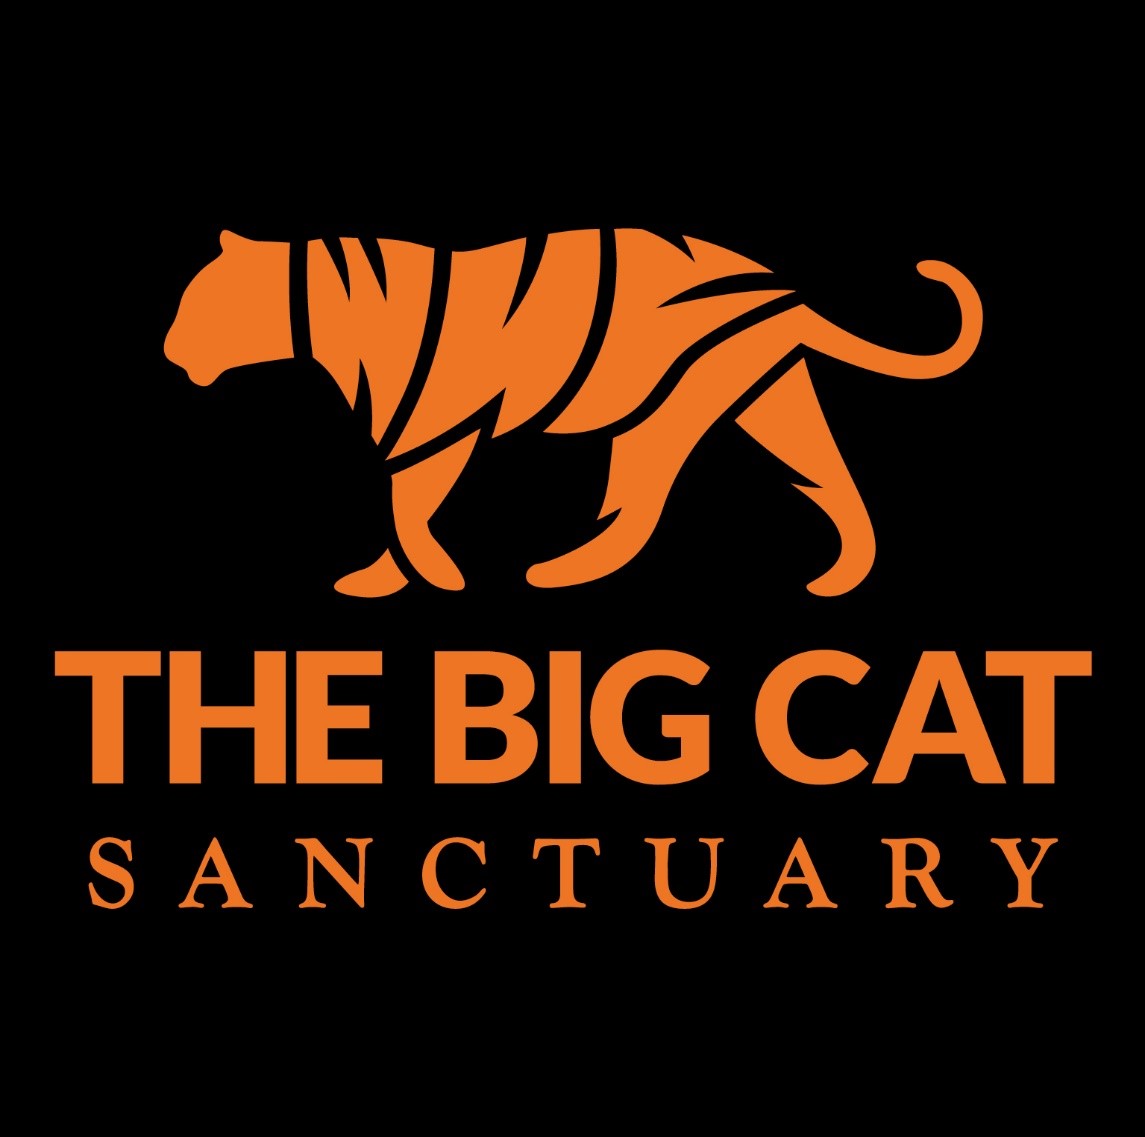 Protect Big Cats - Black Jaguar